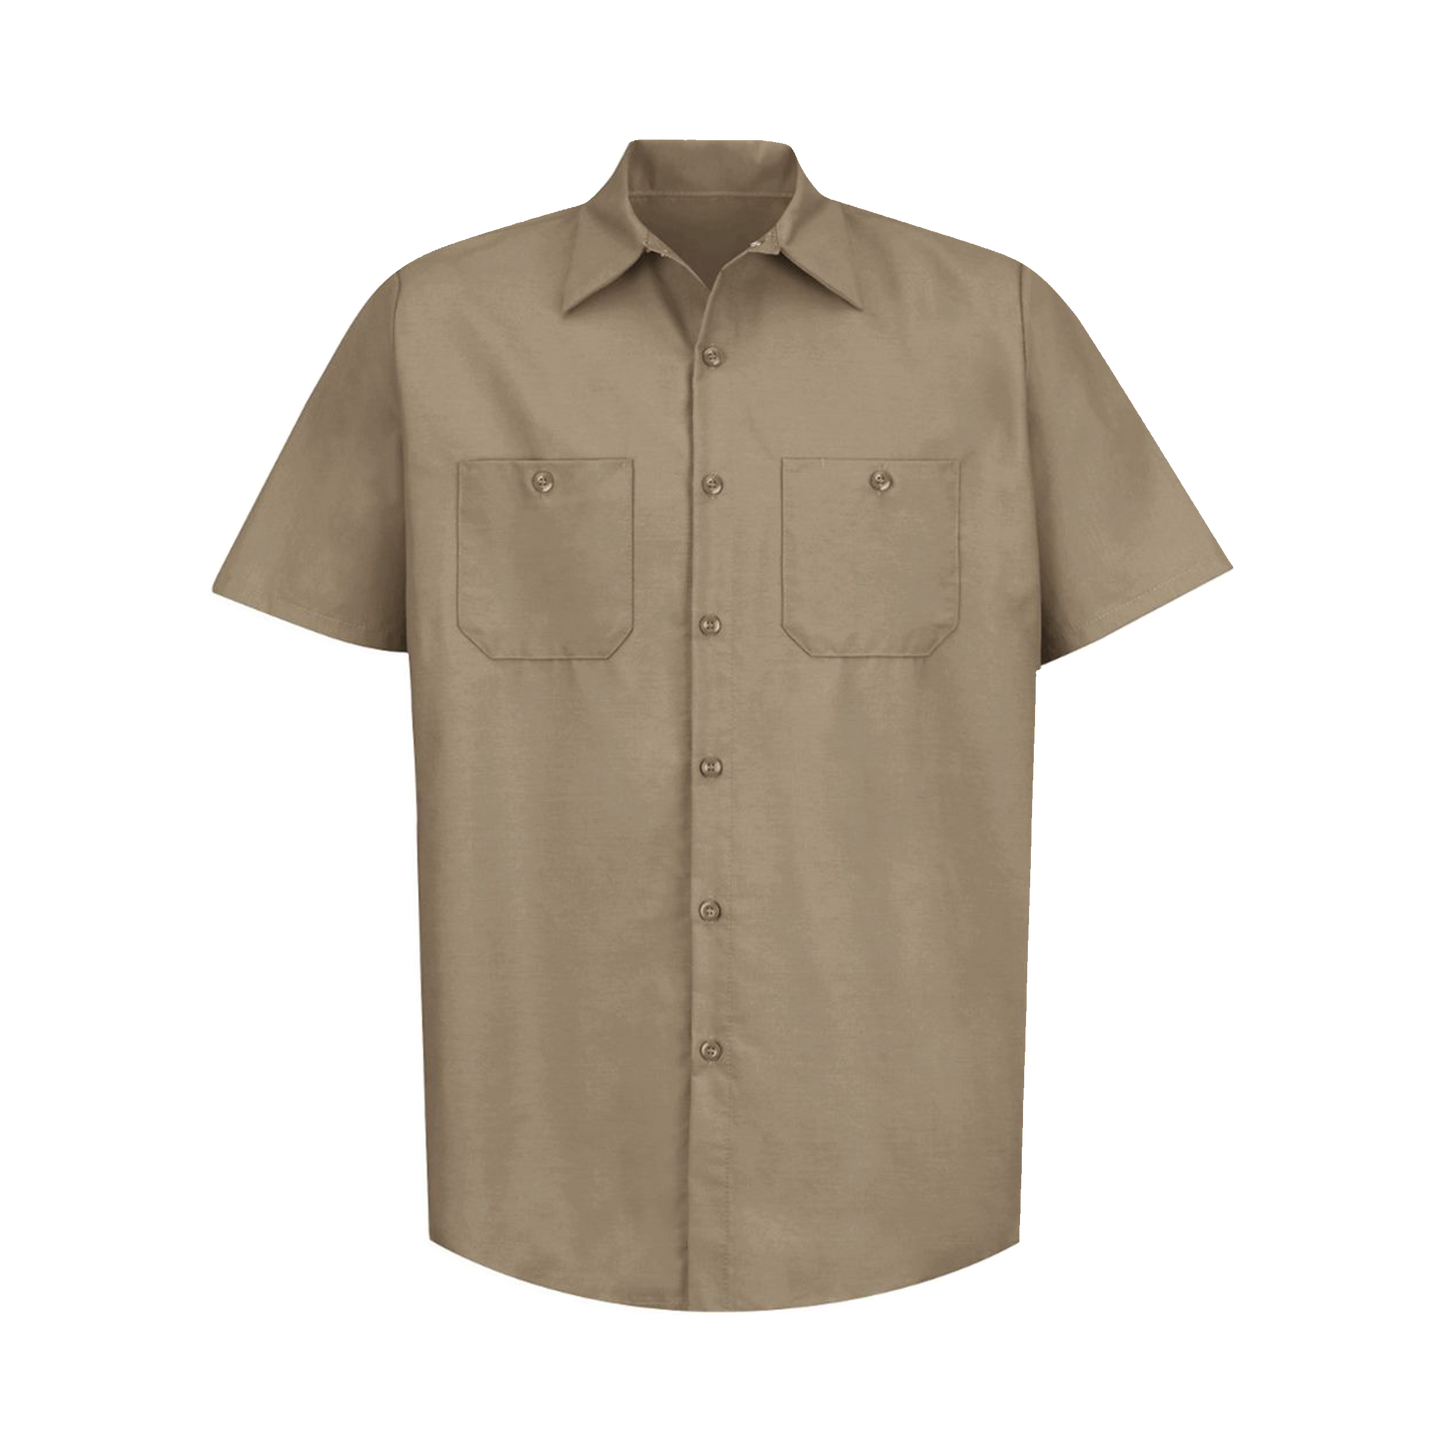 Red Kap - Industrial Short Sleeve Work Shirt - SP24